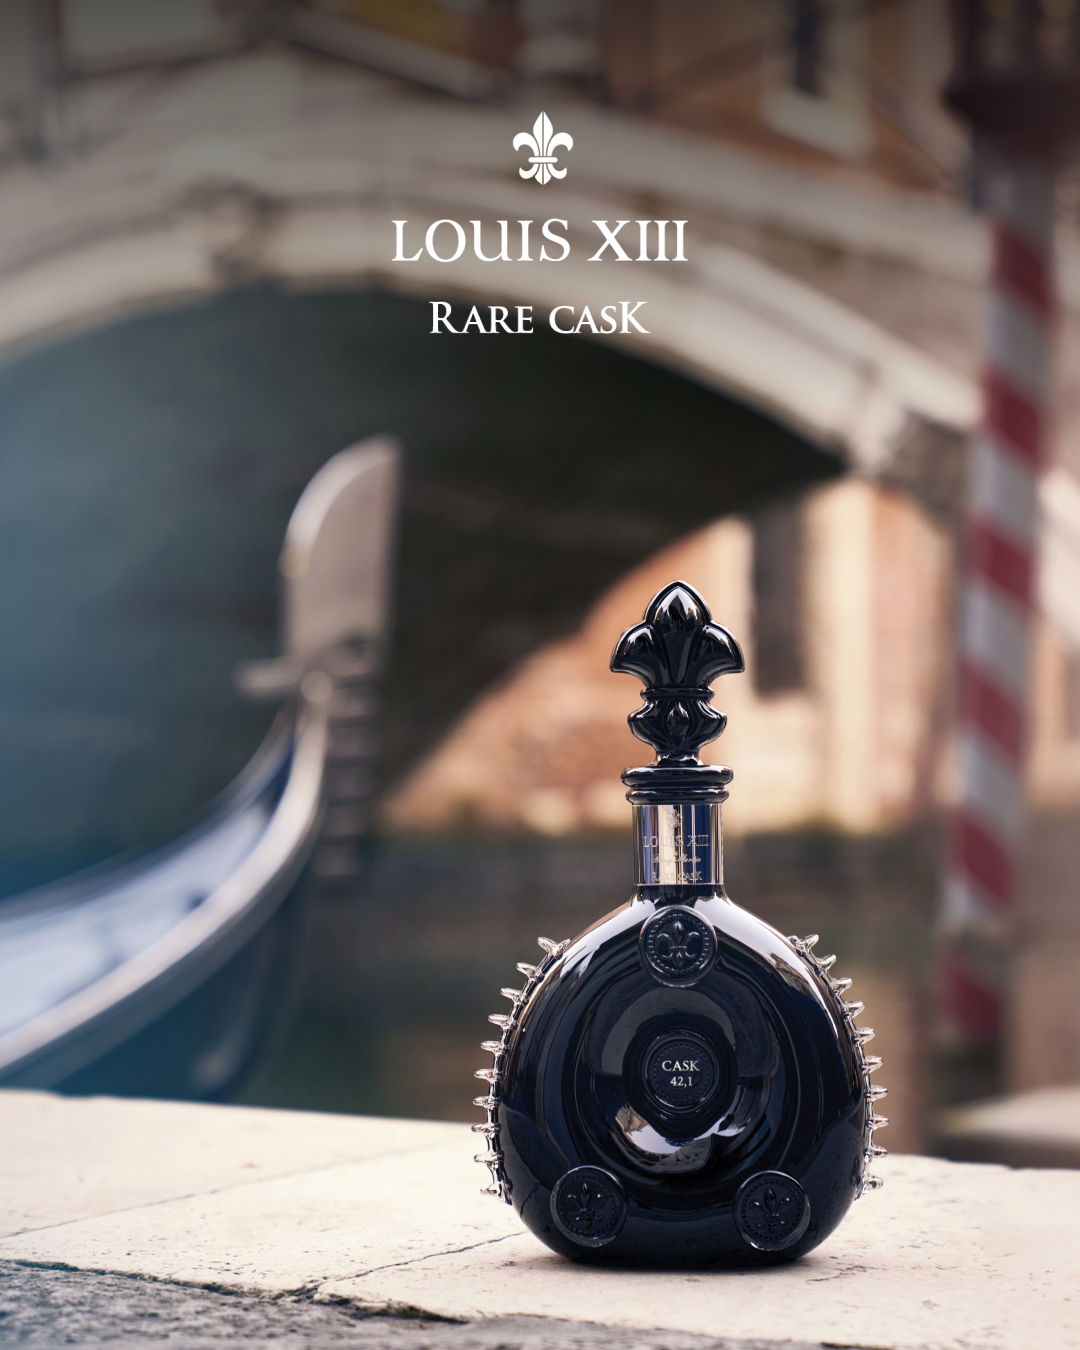 LOUIS XIII RARE CASK 42.1